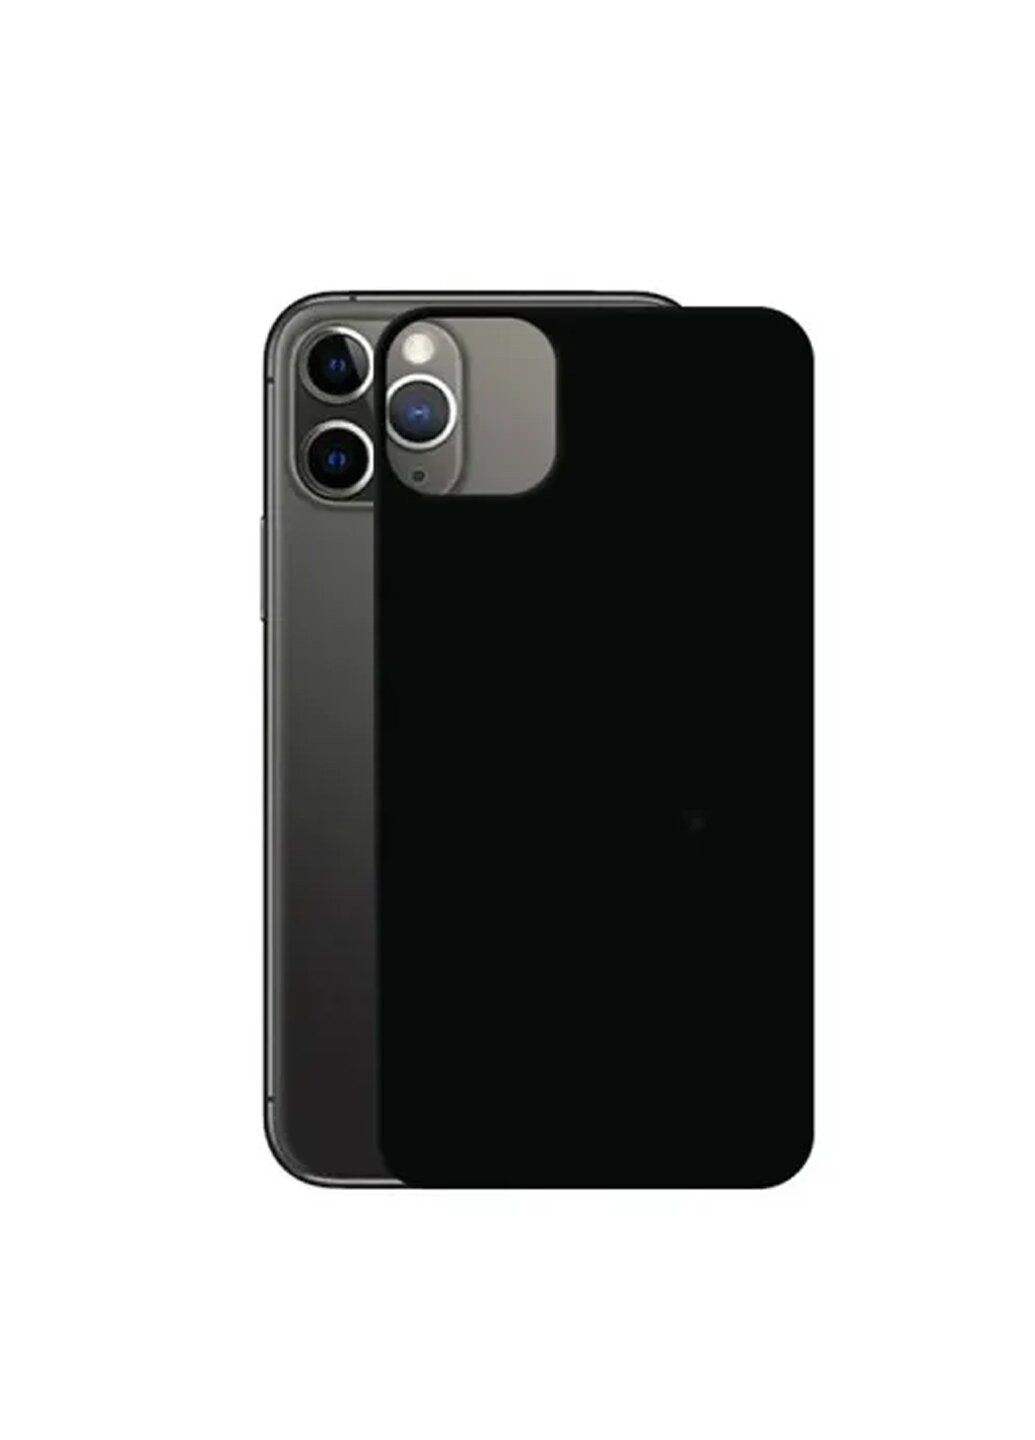 Стекло защитное на заднюю панель цветное матовое для iPhone 11 Pro Max Black CAA (220511807)